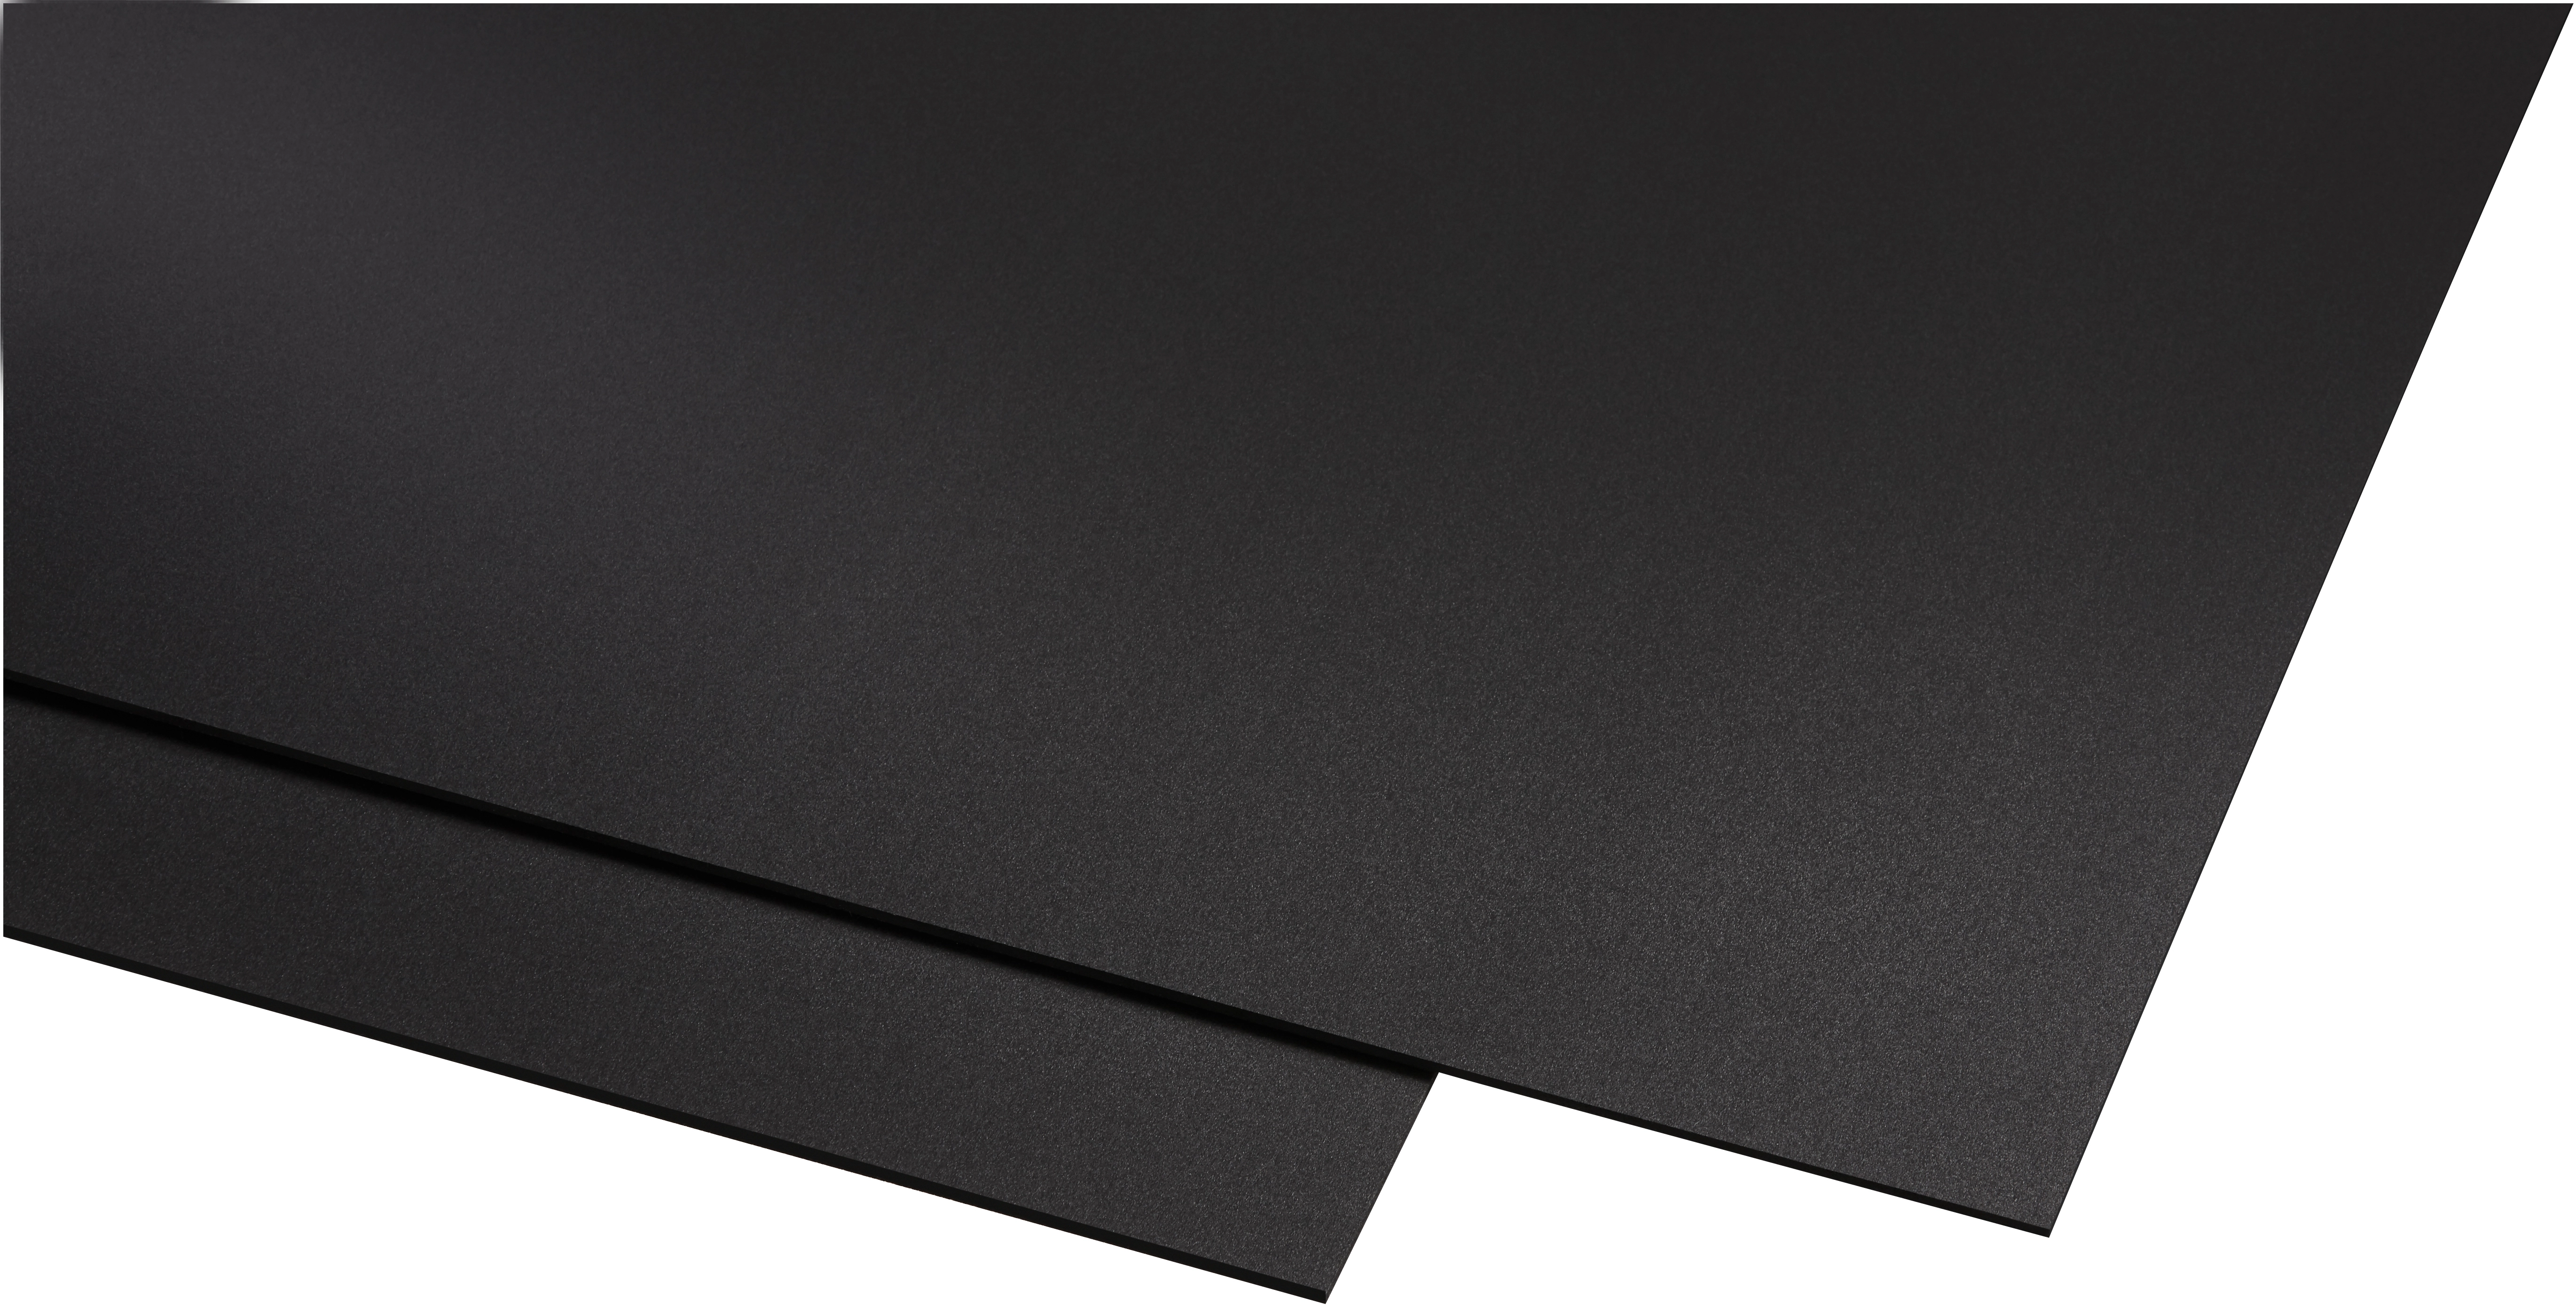 ABS Kunststoff Platte | Zuschnitt | WEIß | 100x49cm in 1-10mm | TOP Qualität